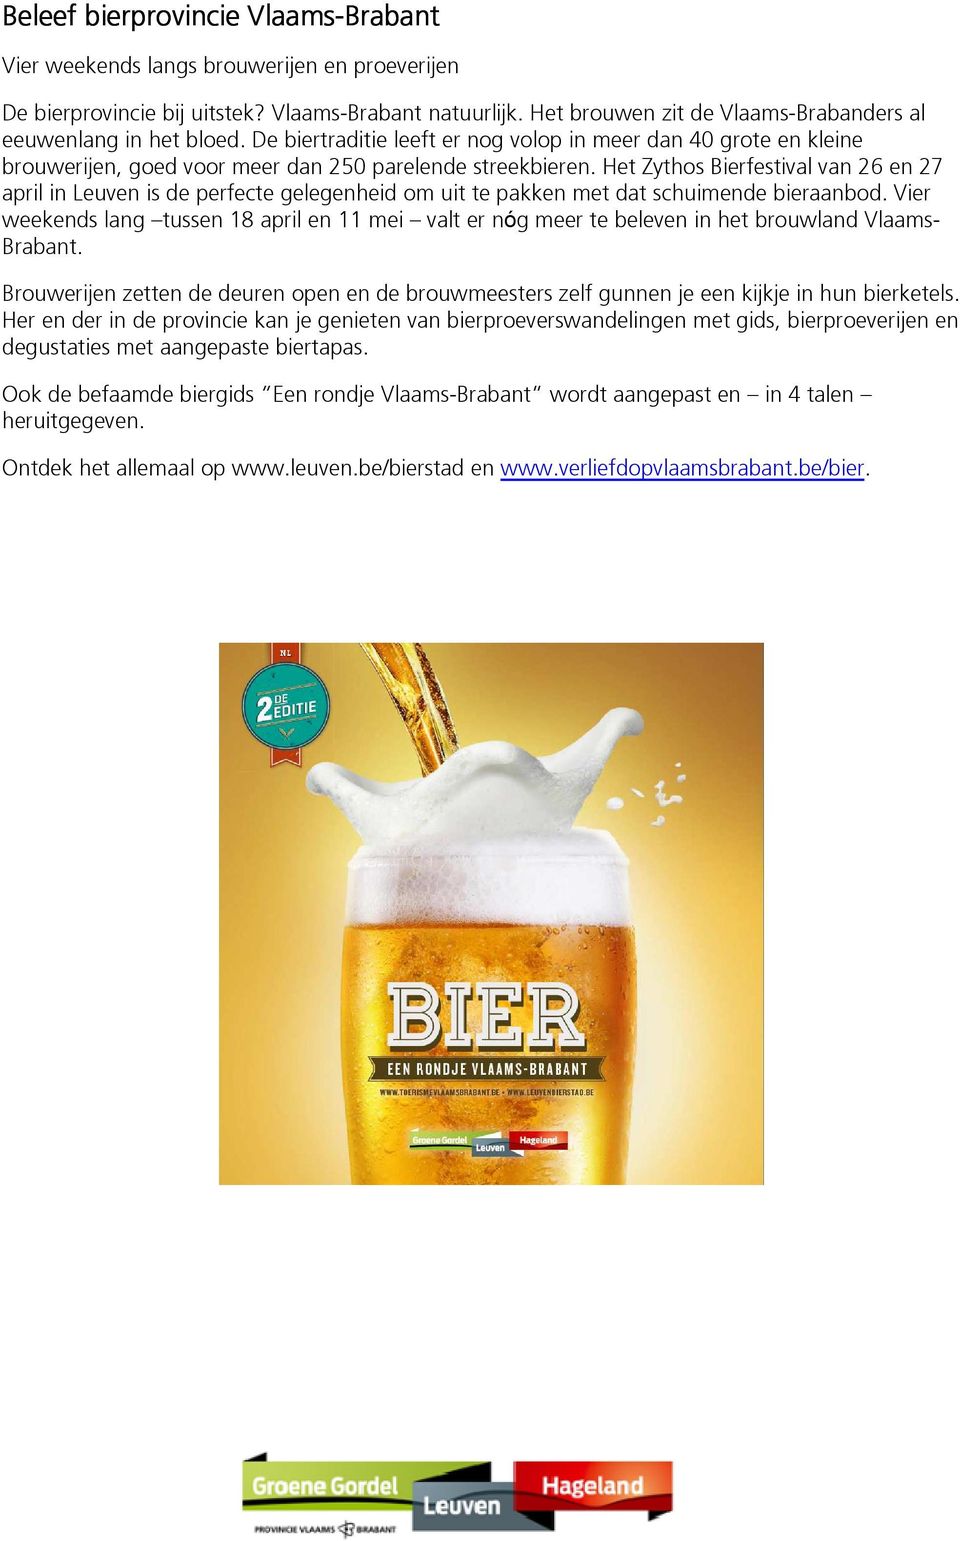 Het Zythos Bierfestival van 26 en 27 april in Leuven is de perfecte gelegenheid om uit te pakken met dat schuimende bieraanbod.